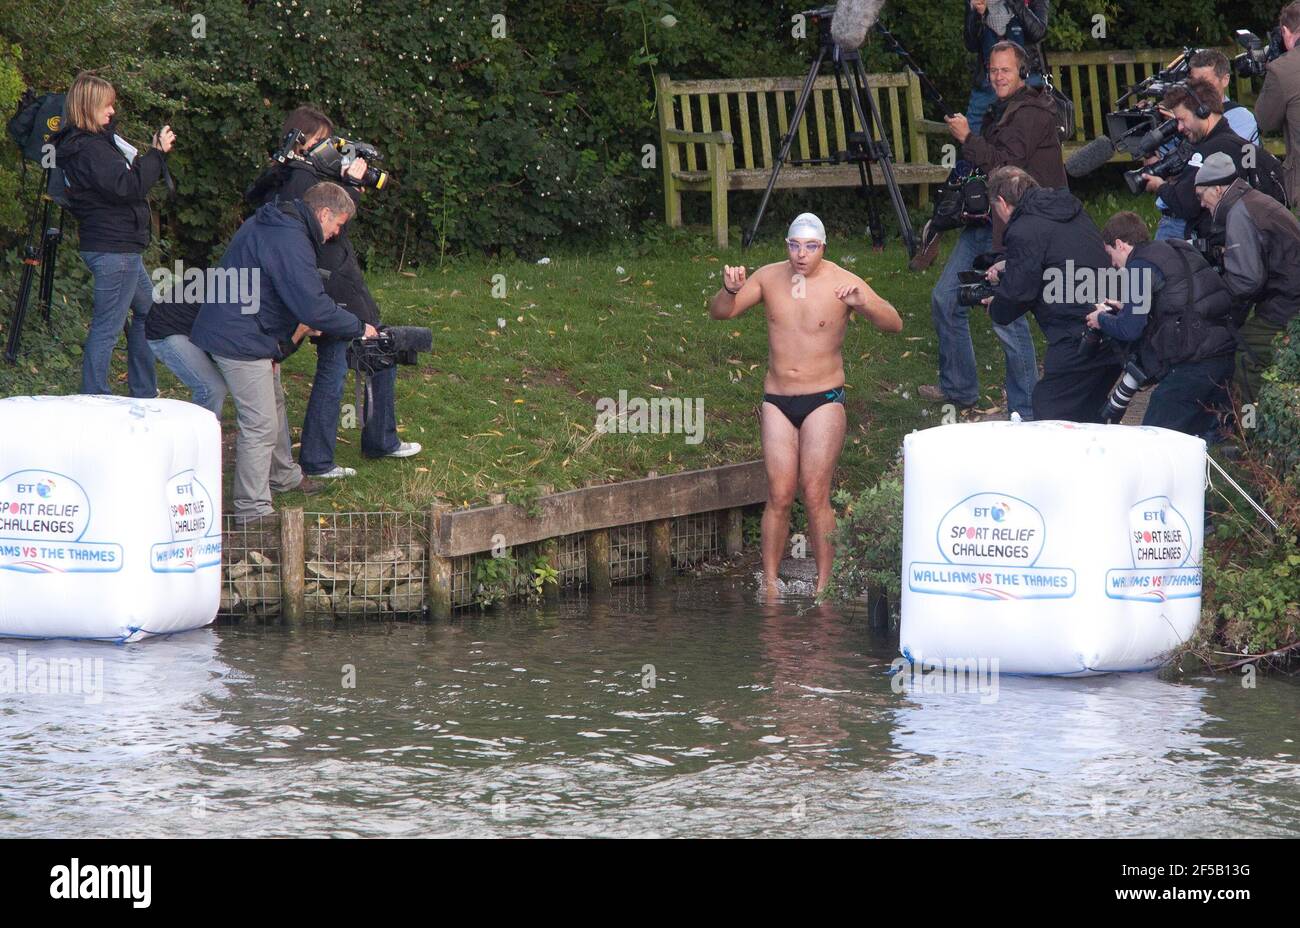 David Walliams, Komiker und Fernsehstar, beginnt sein Schwimmen entlang der Themse von Lechlade, Gloucestershire. Walliams, Star von Little Britain, wird 140 Meilen schwimmen, um Geld für Sports Relief zu sammeln und hofft, den aktuellen Rekord von 21 Tagen zu brechen, um das Schwimmen zu beenden. Foto von Adam Gasson. Stockfoto